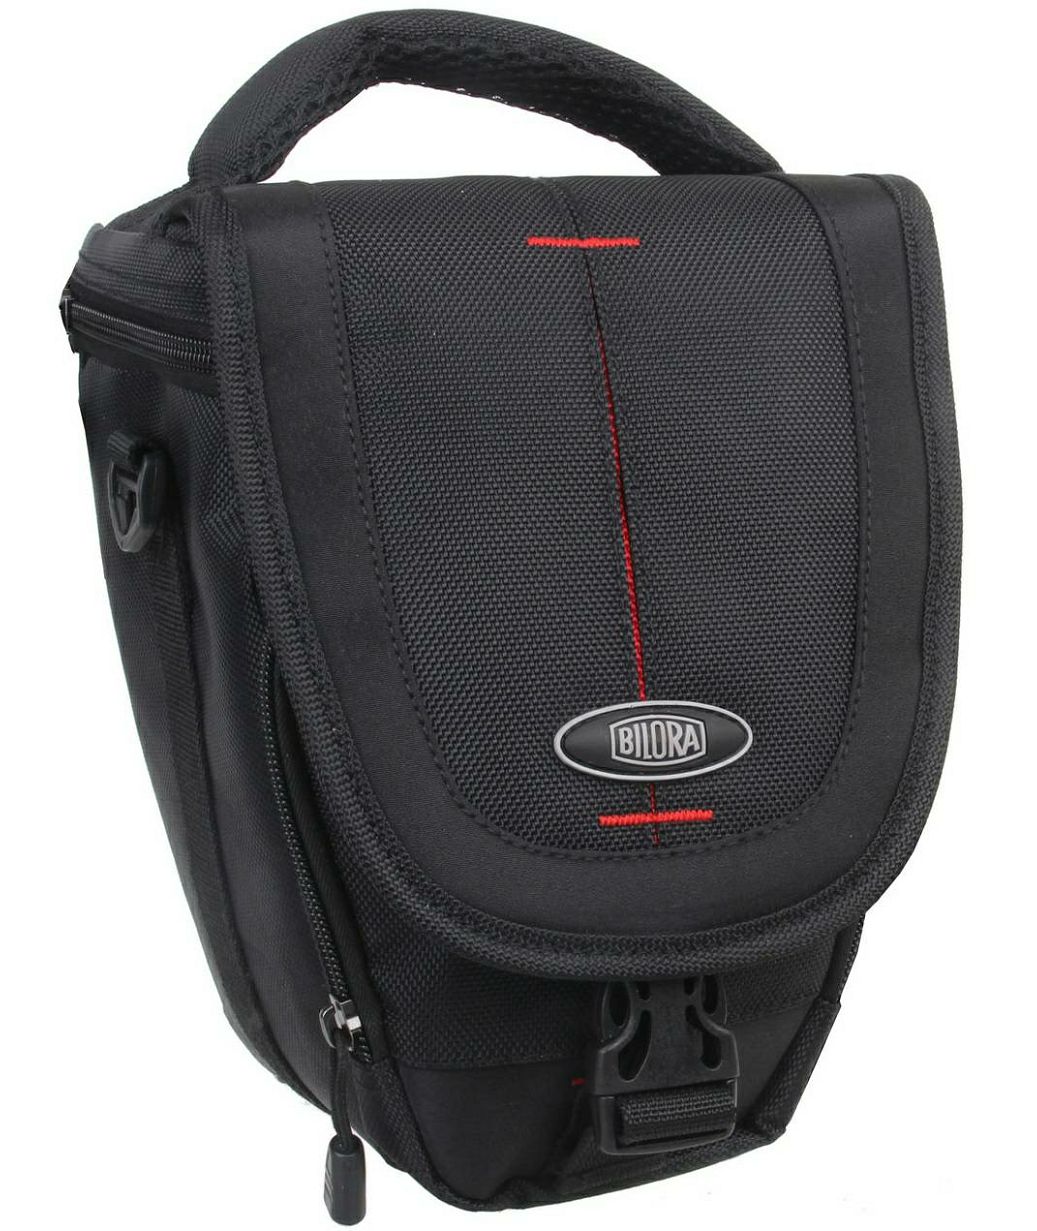 Bilora B-Star 30 (2530) Small Bag Toploader torba za DSLR, mirrorless ili kompaktni fotoaparat